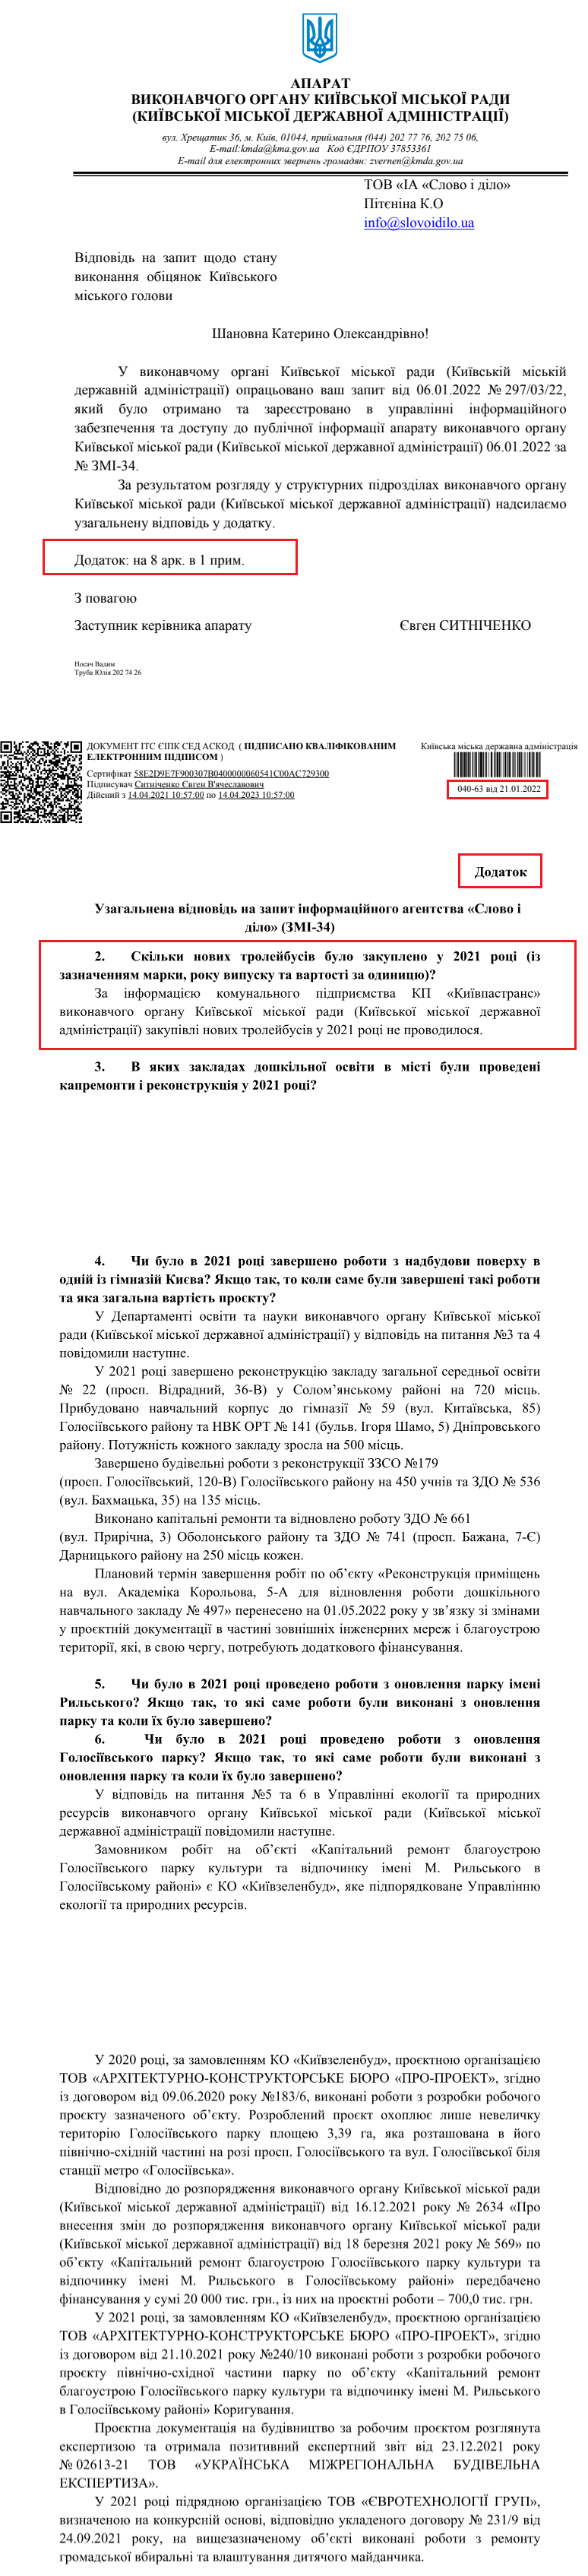 Лист Київської міської державної адміністрації від 21 січня 2022 року